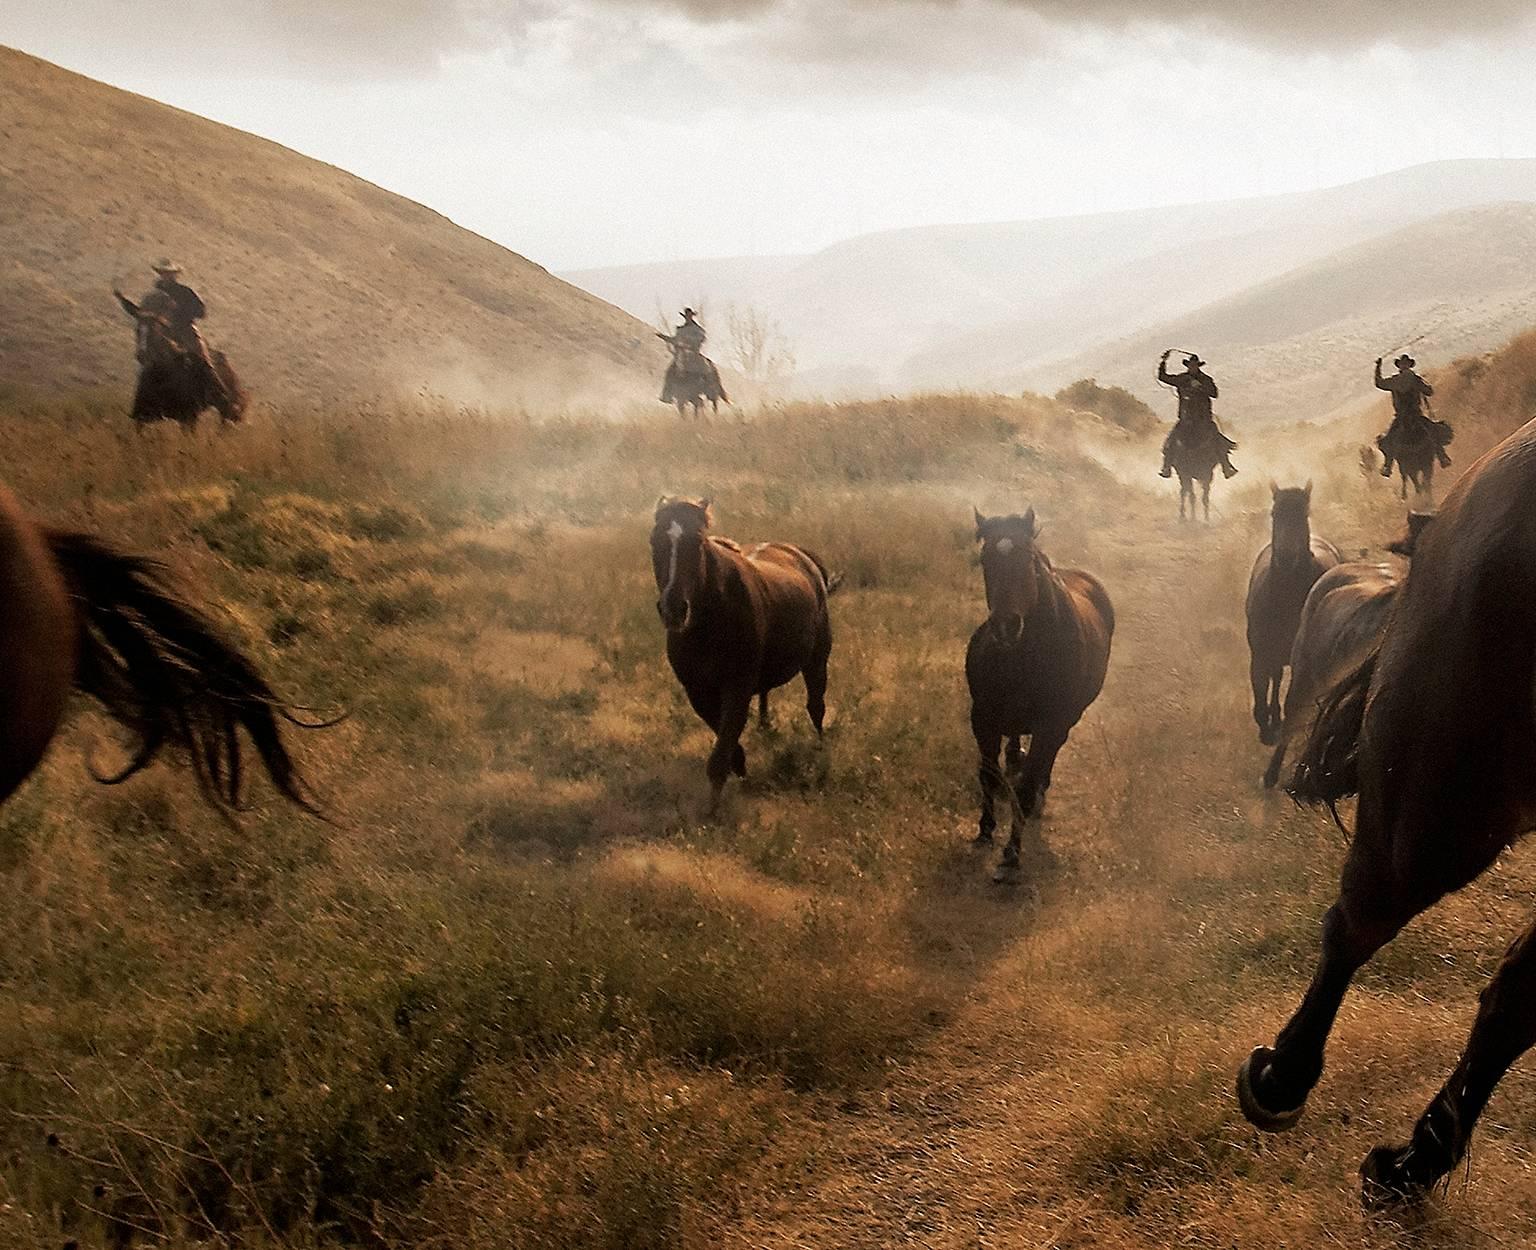 Horses - Photograph by Chris Gordaneer